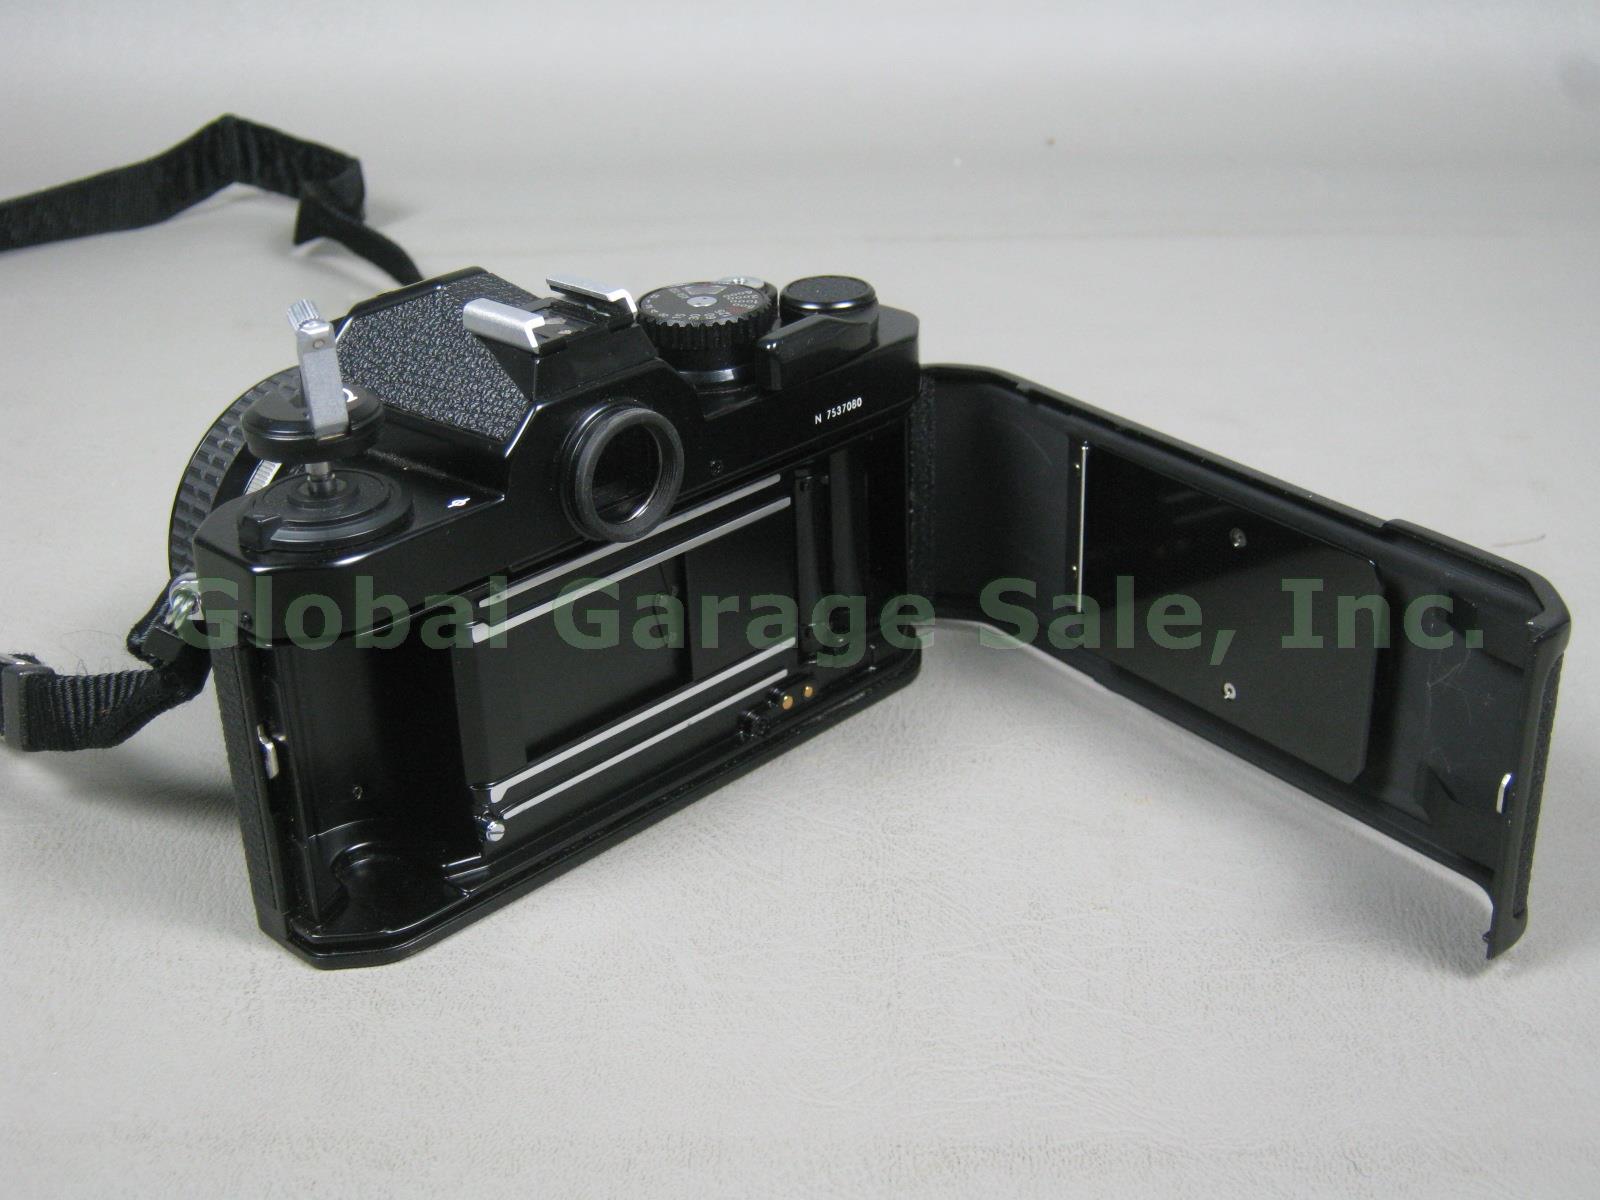 Vtg Black Nikon FM2 35mm SLR Film Camera Nikkor 50mm 1.4 Lens Bundle N7537080 NR 5